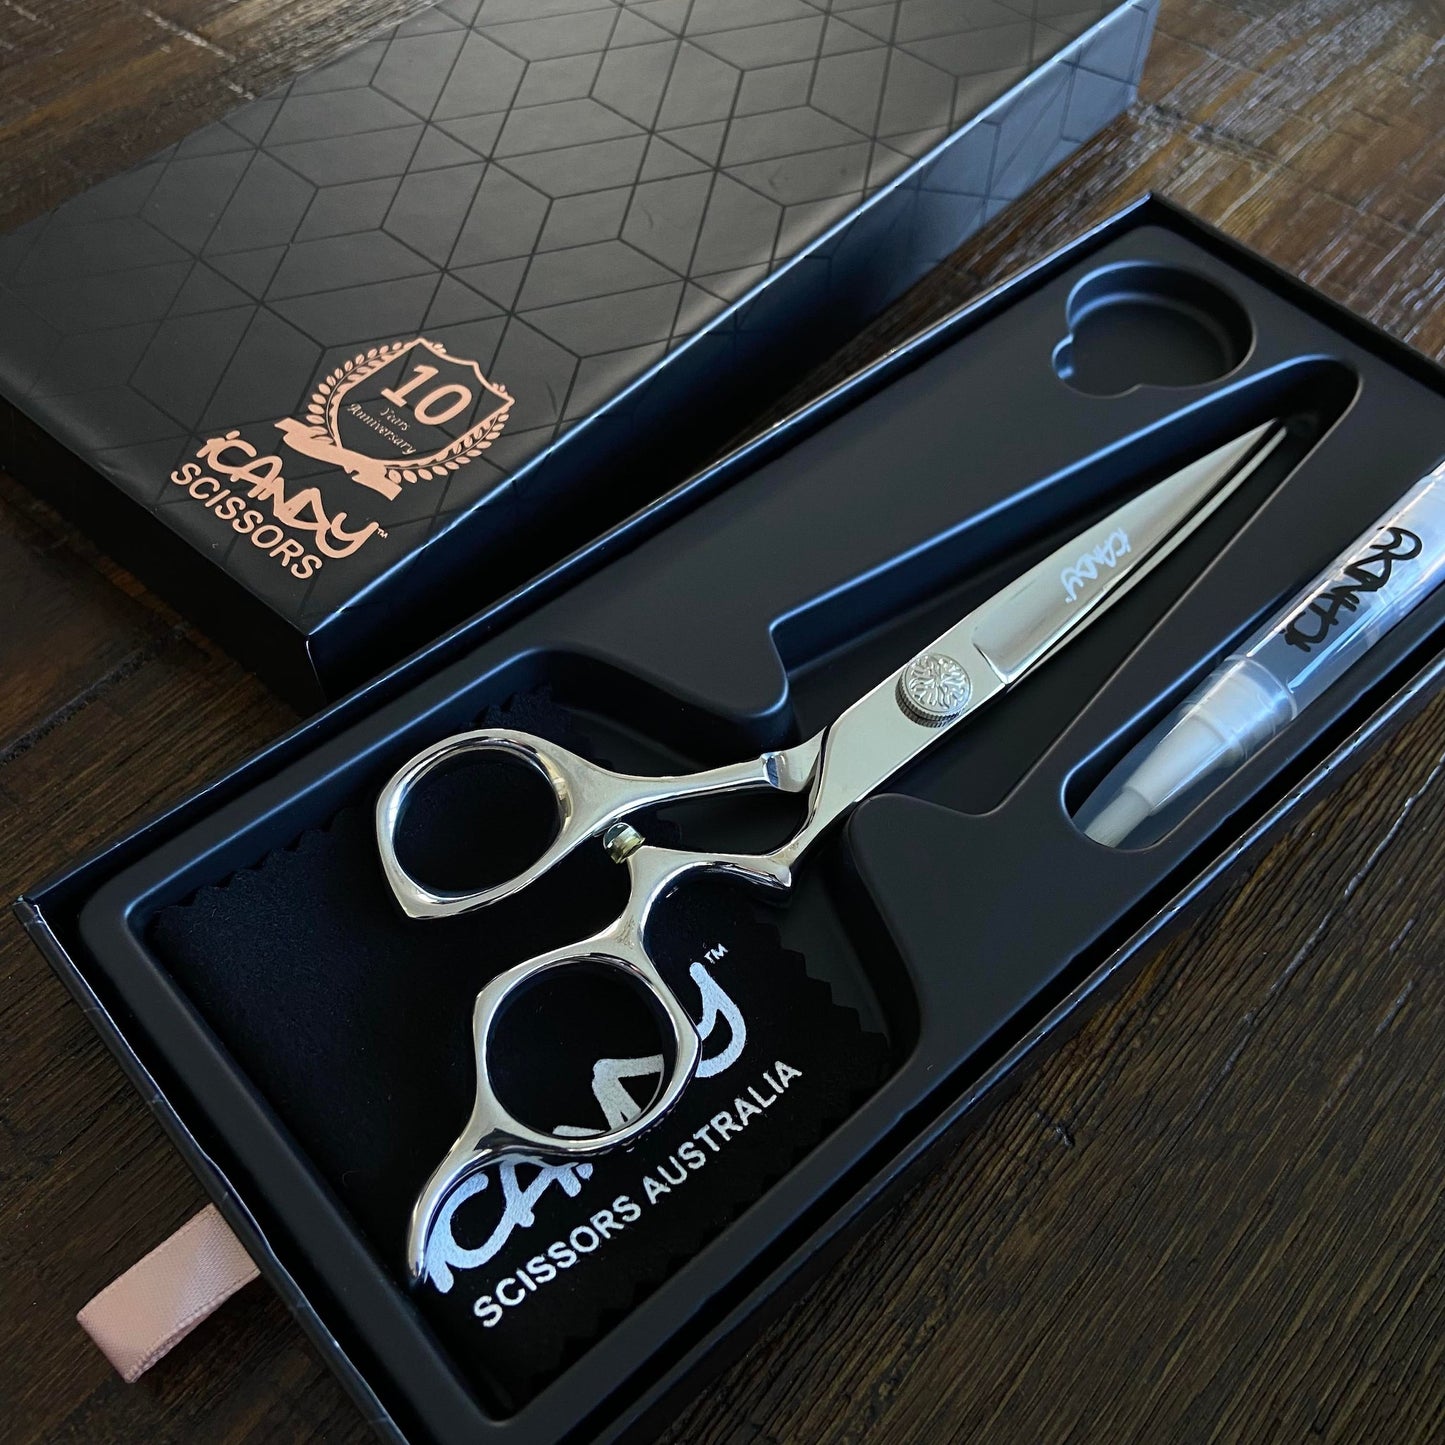 iCandy Athena Scissor 6.5" Open Box